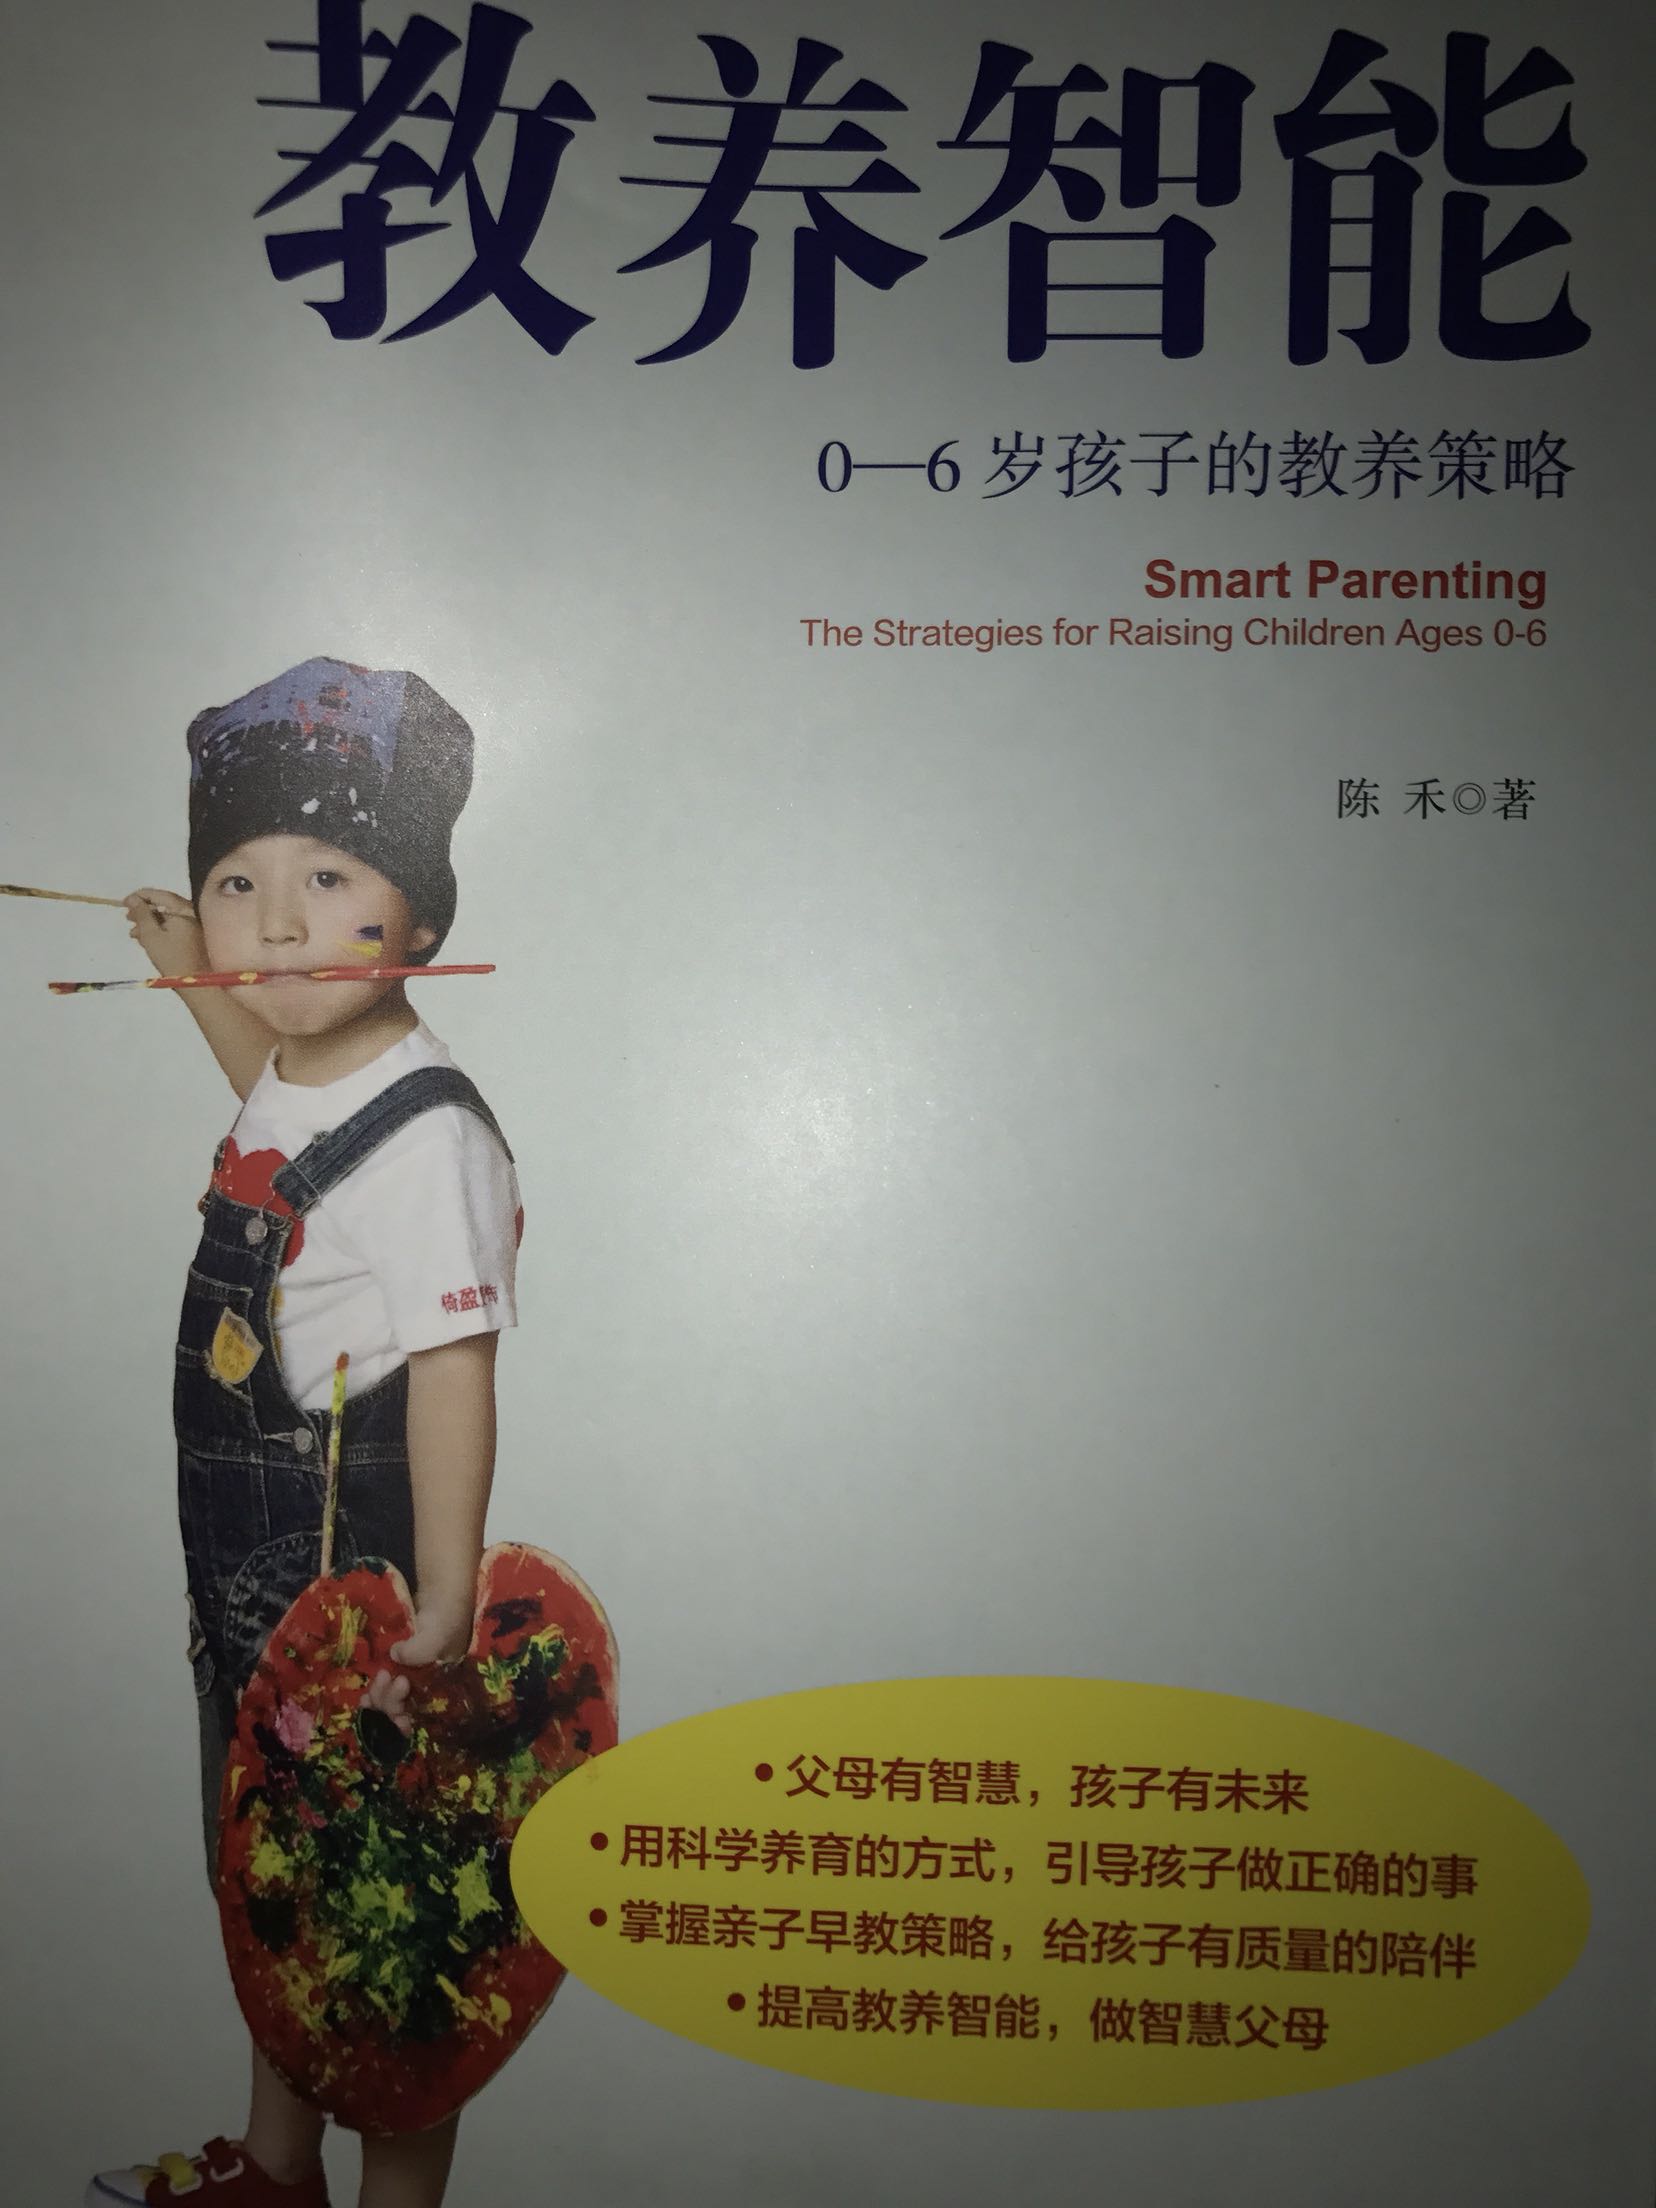 平时就会看陈禾的微博，终于下手买了这本书，喜欢陈爷爷的风格。